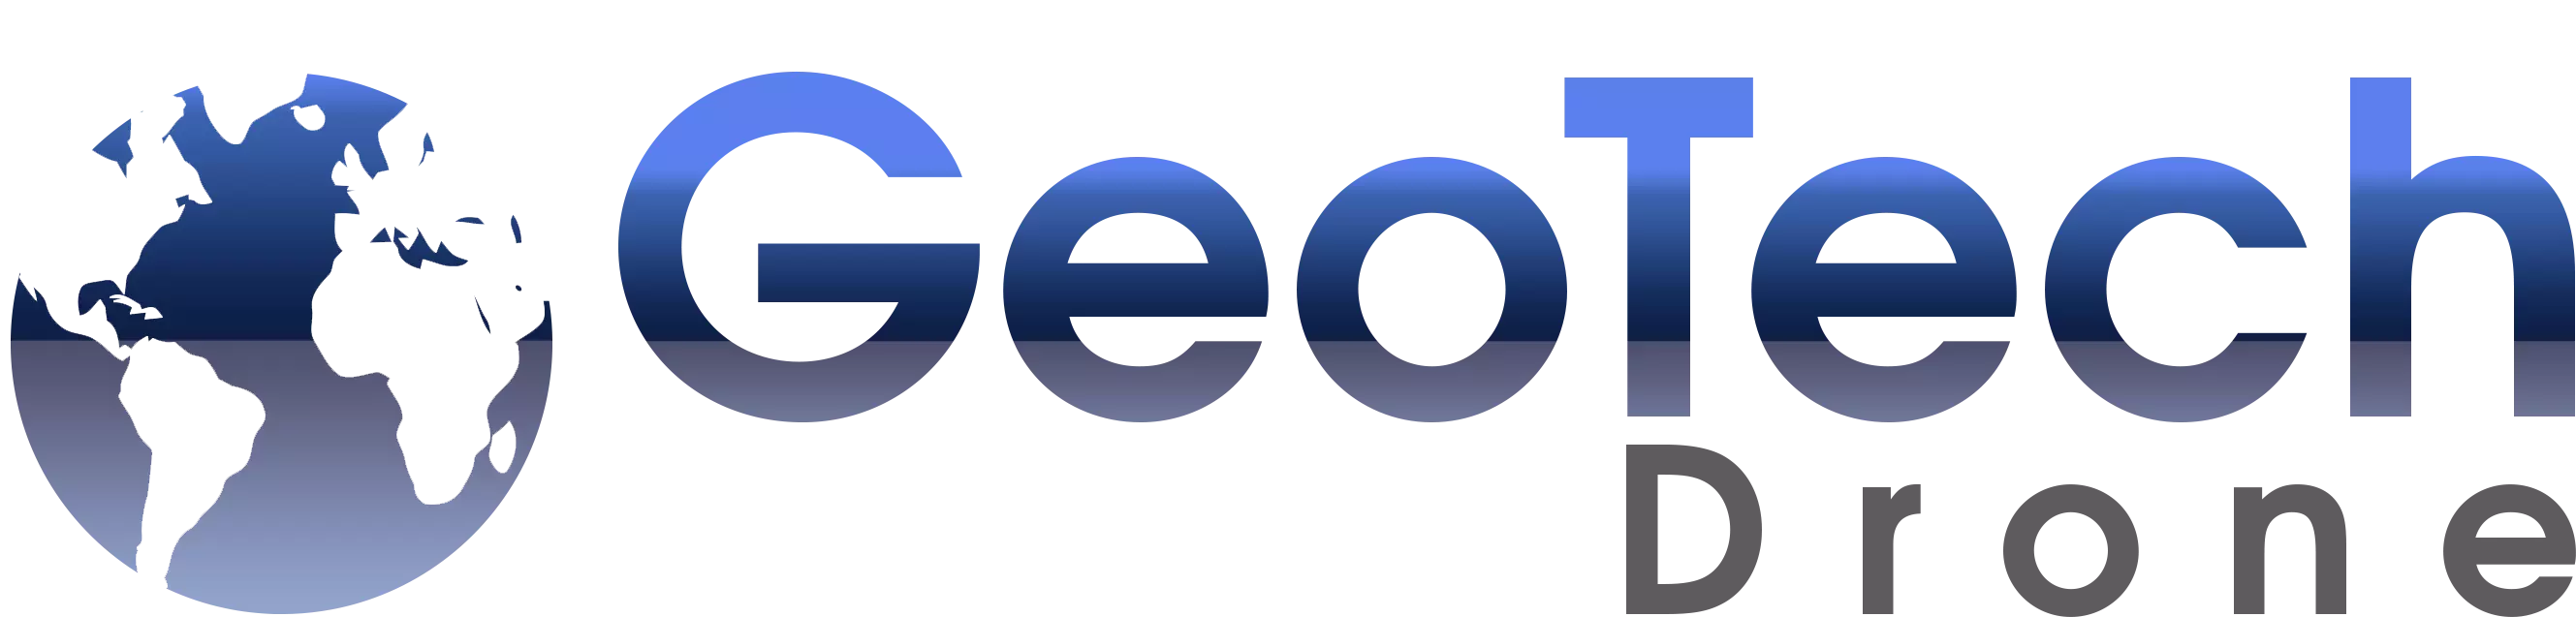 Logo Geotchdrone